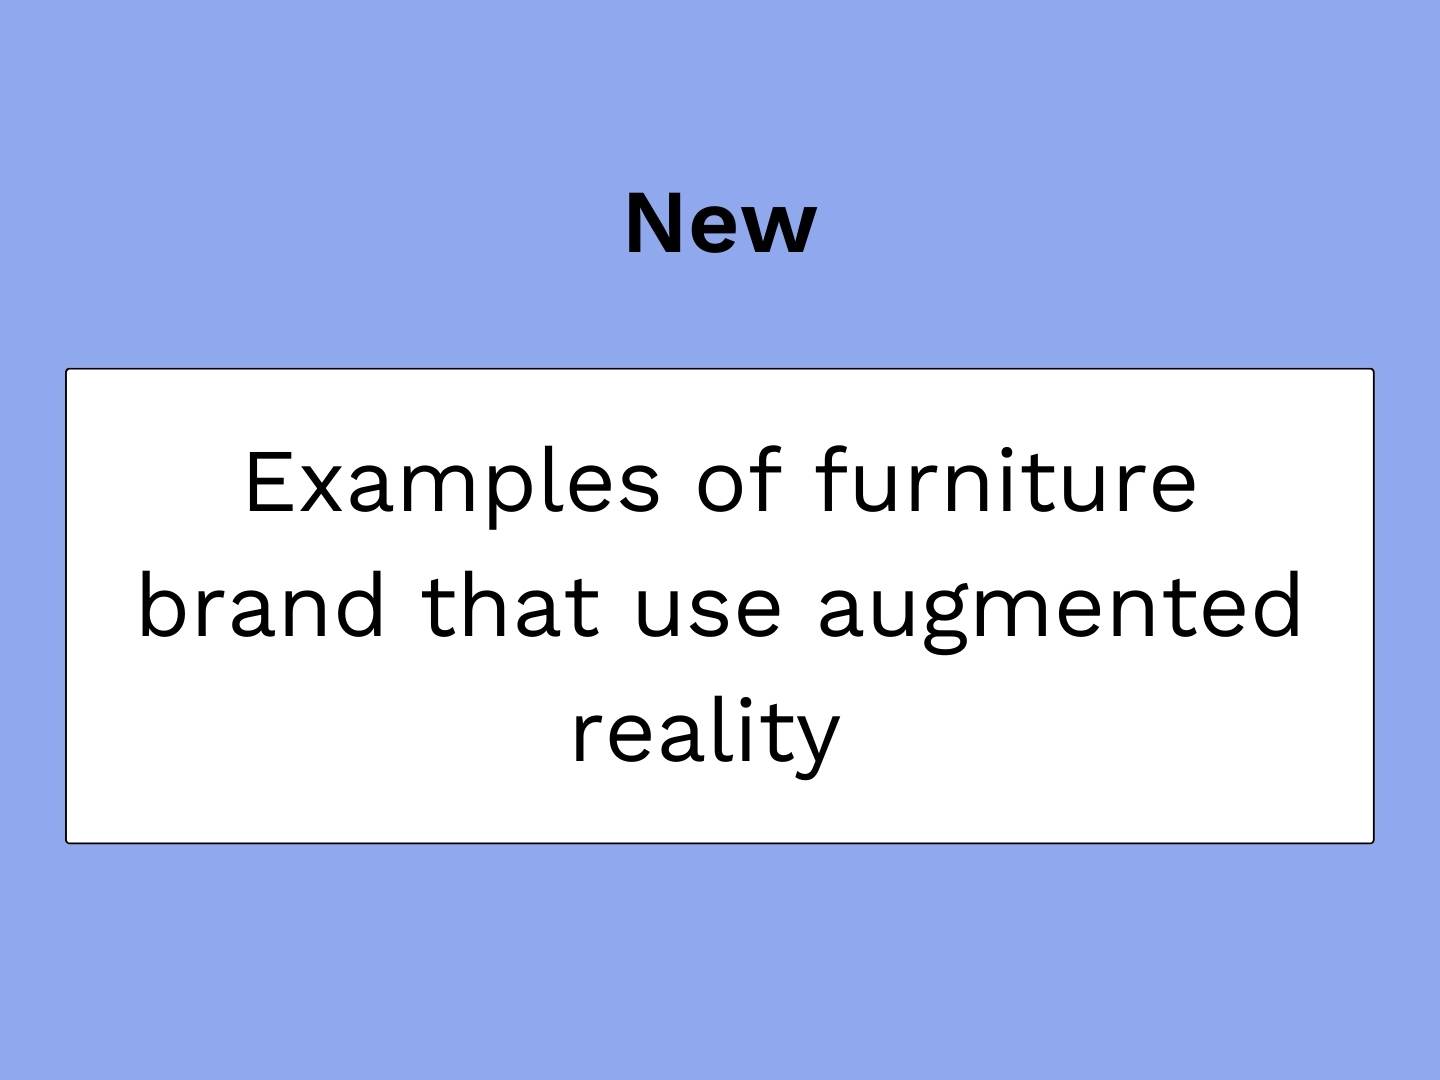 artigo do blogue da vignette sobre marcas de mobiliário que utilizam a realidade aumentada